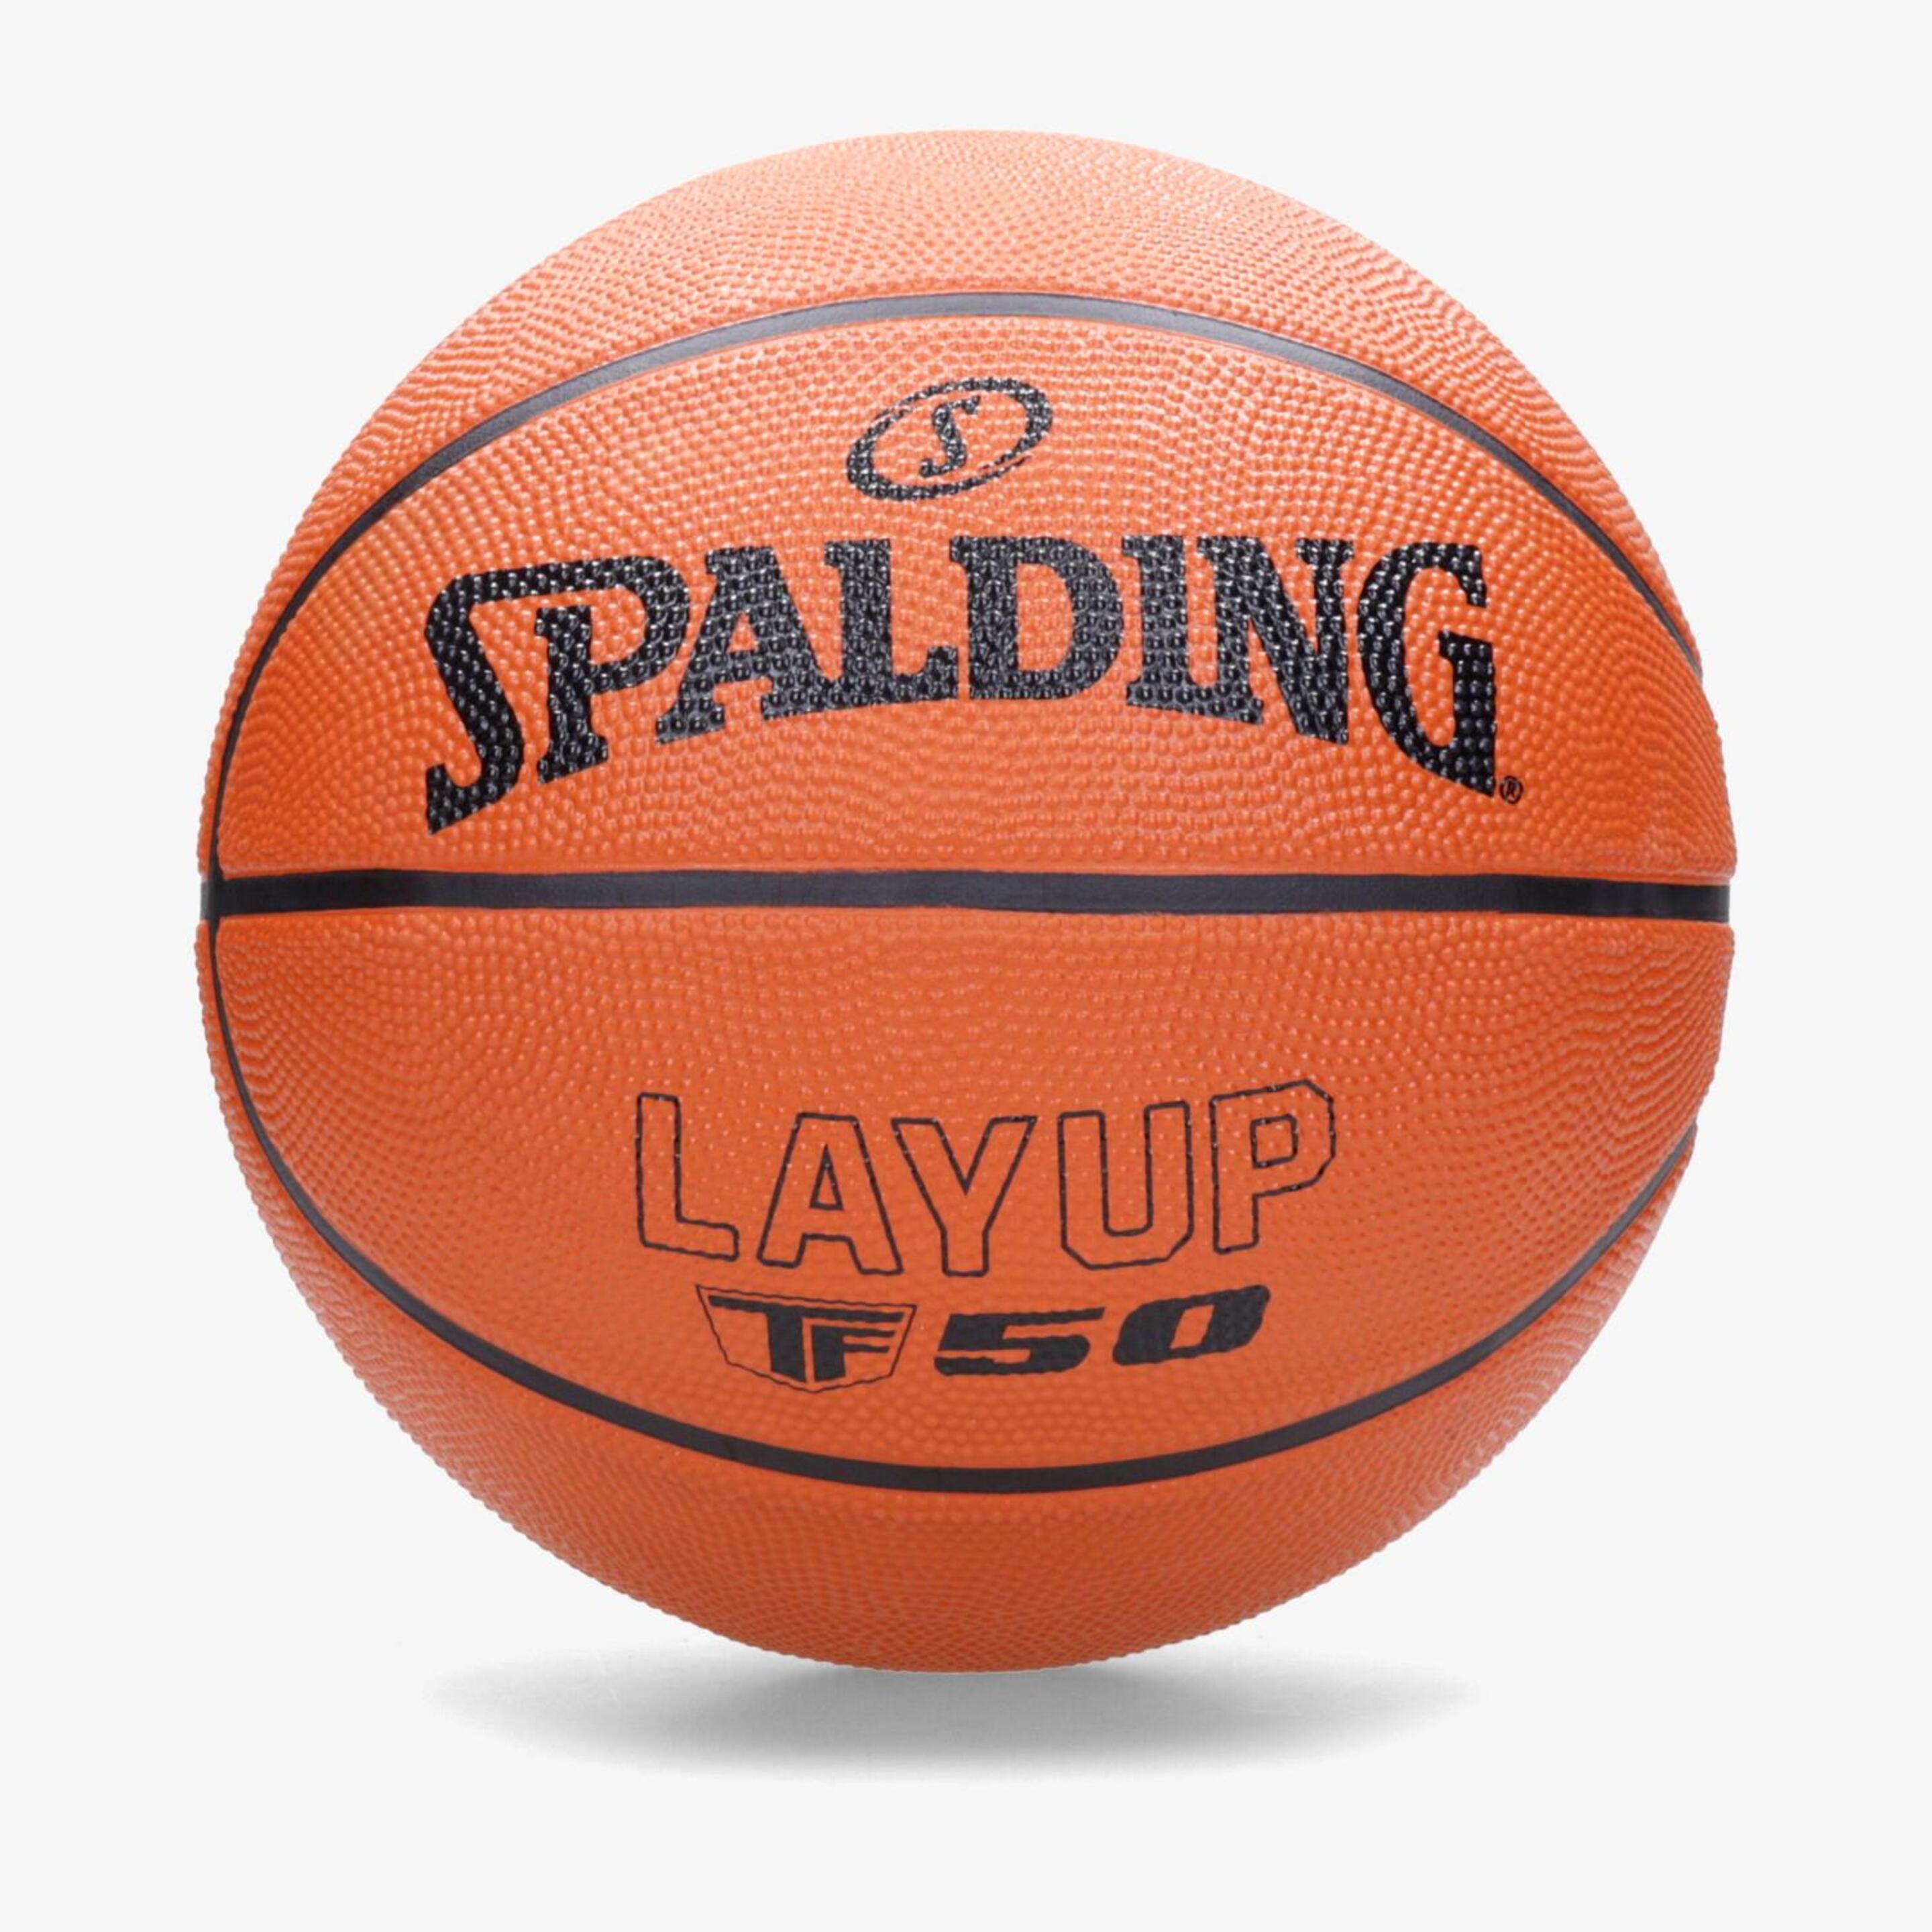 Spalding Layup Tf-50 - naranja - Bola Basquetebol T7